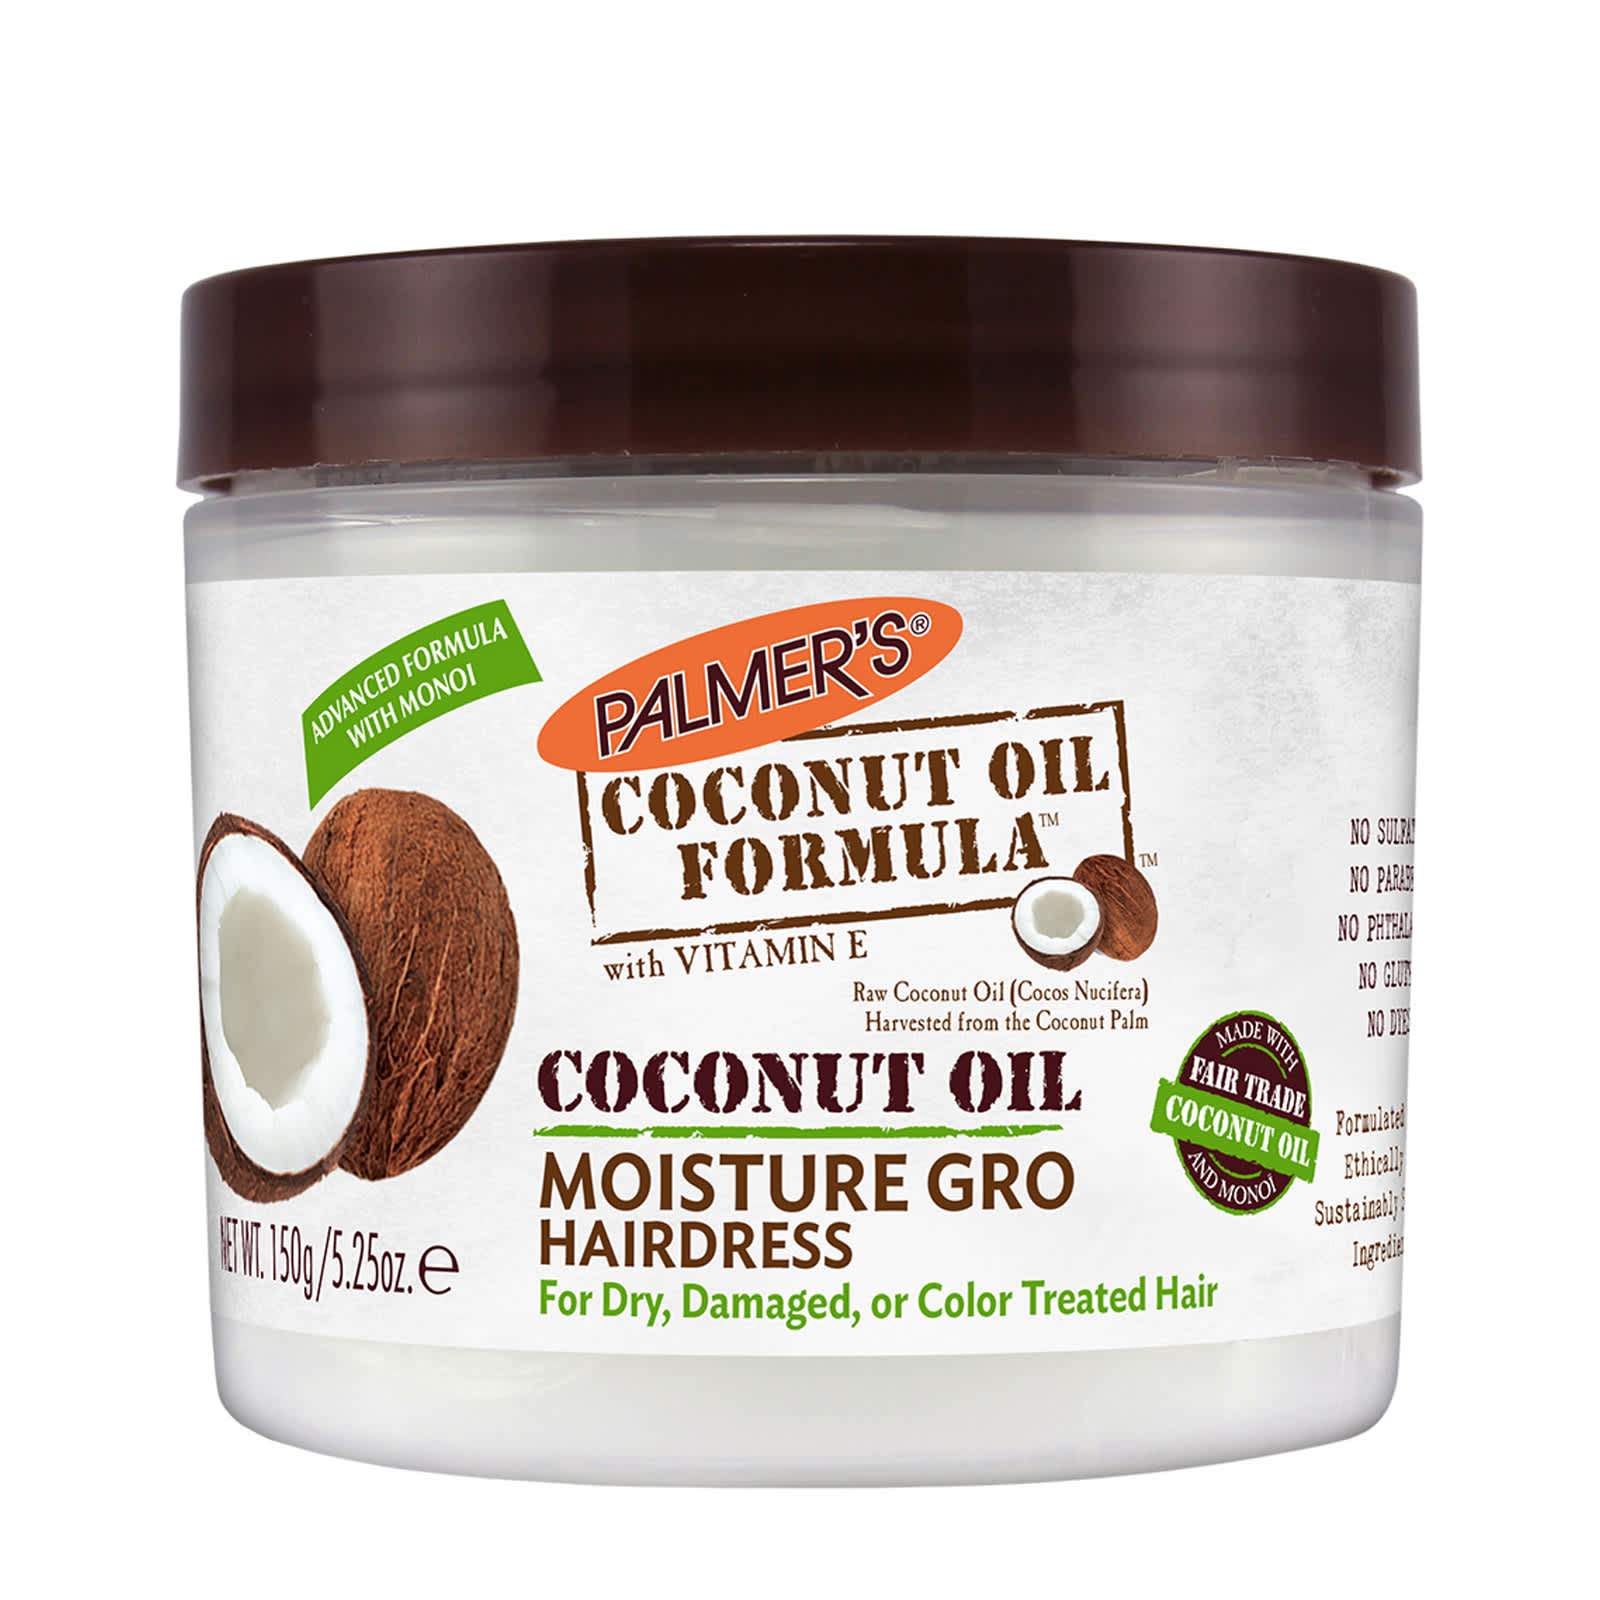 Palmer's Coconut Oil Moisture Gro Hairdress - 150g